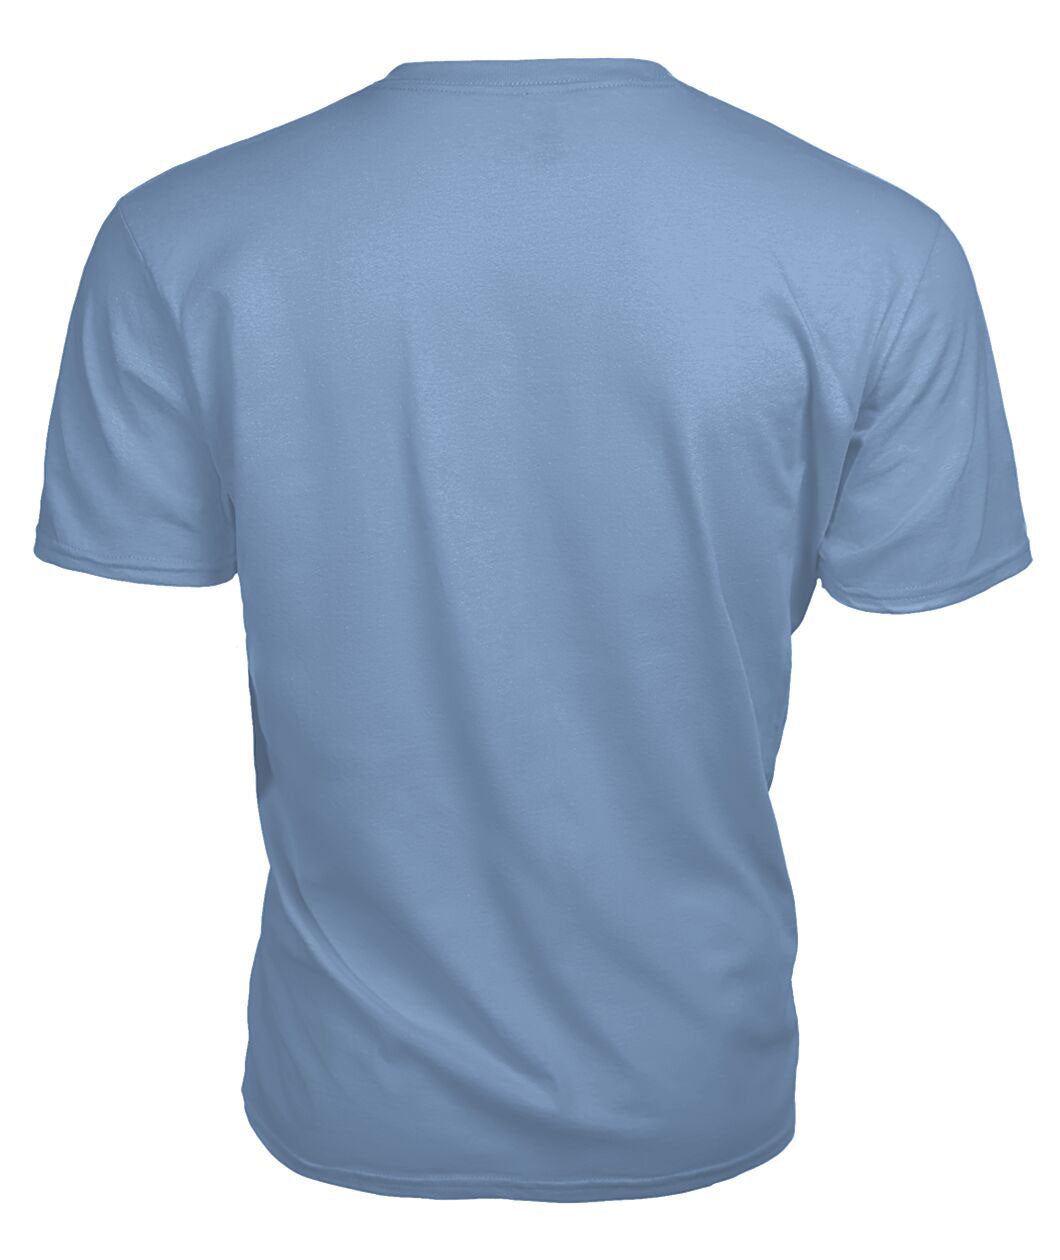 Elliott Modern Tartan Crest 2D T-shirt - Blood Runs Through My Veins Style